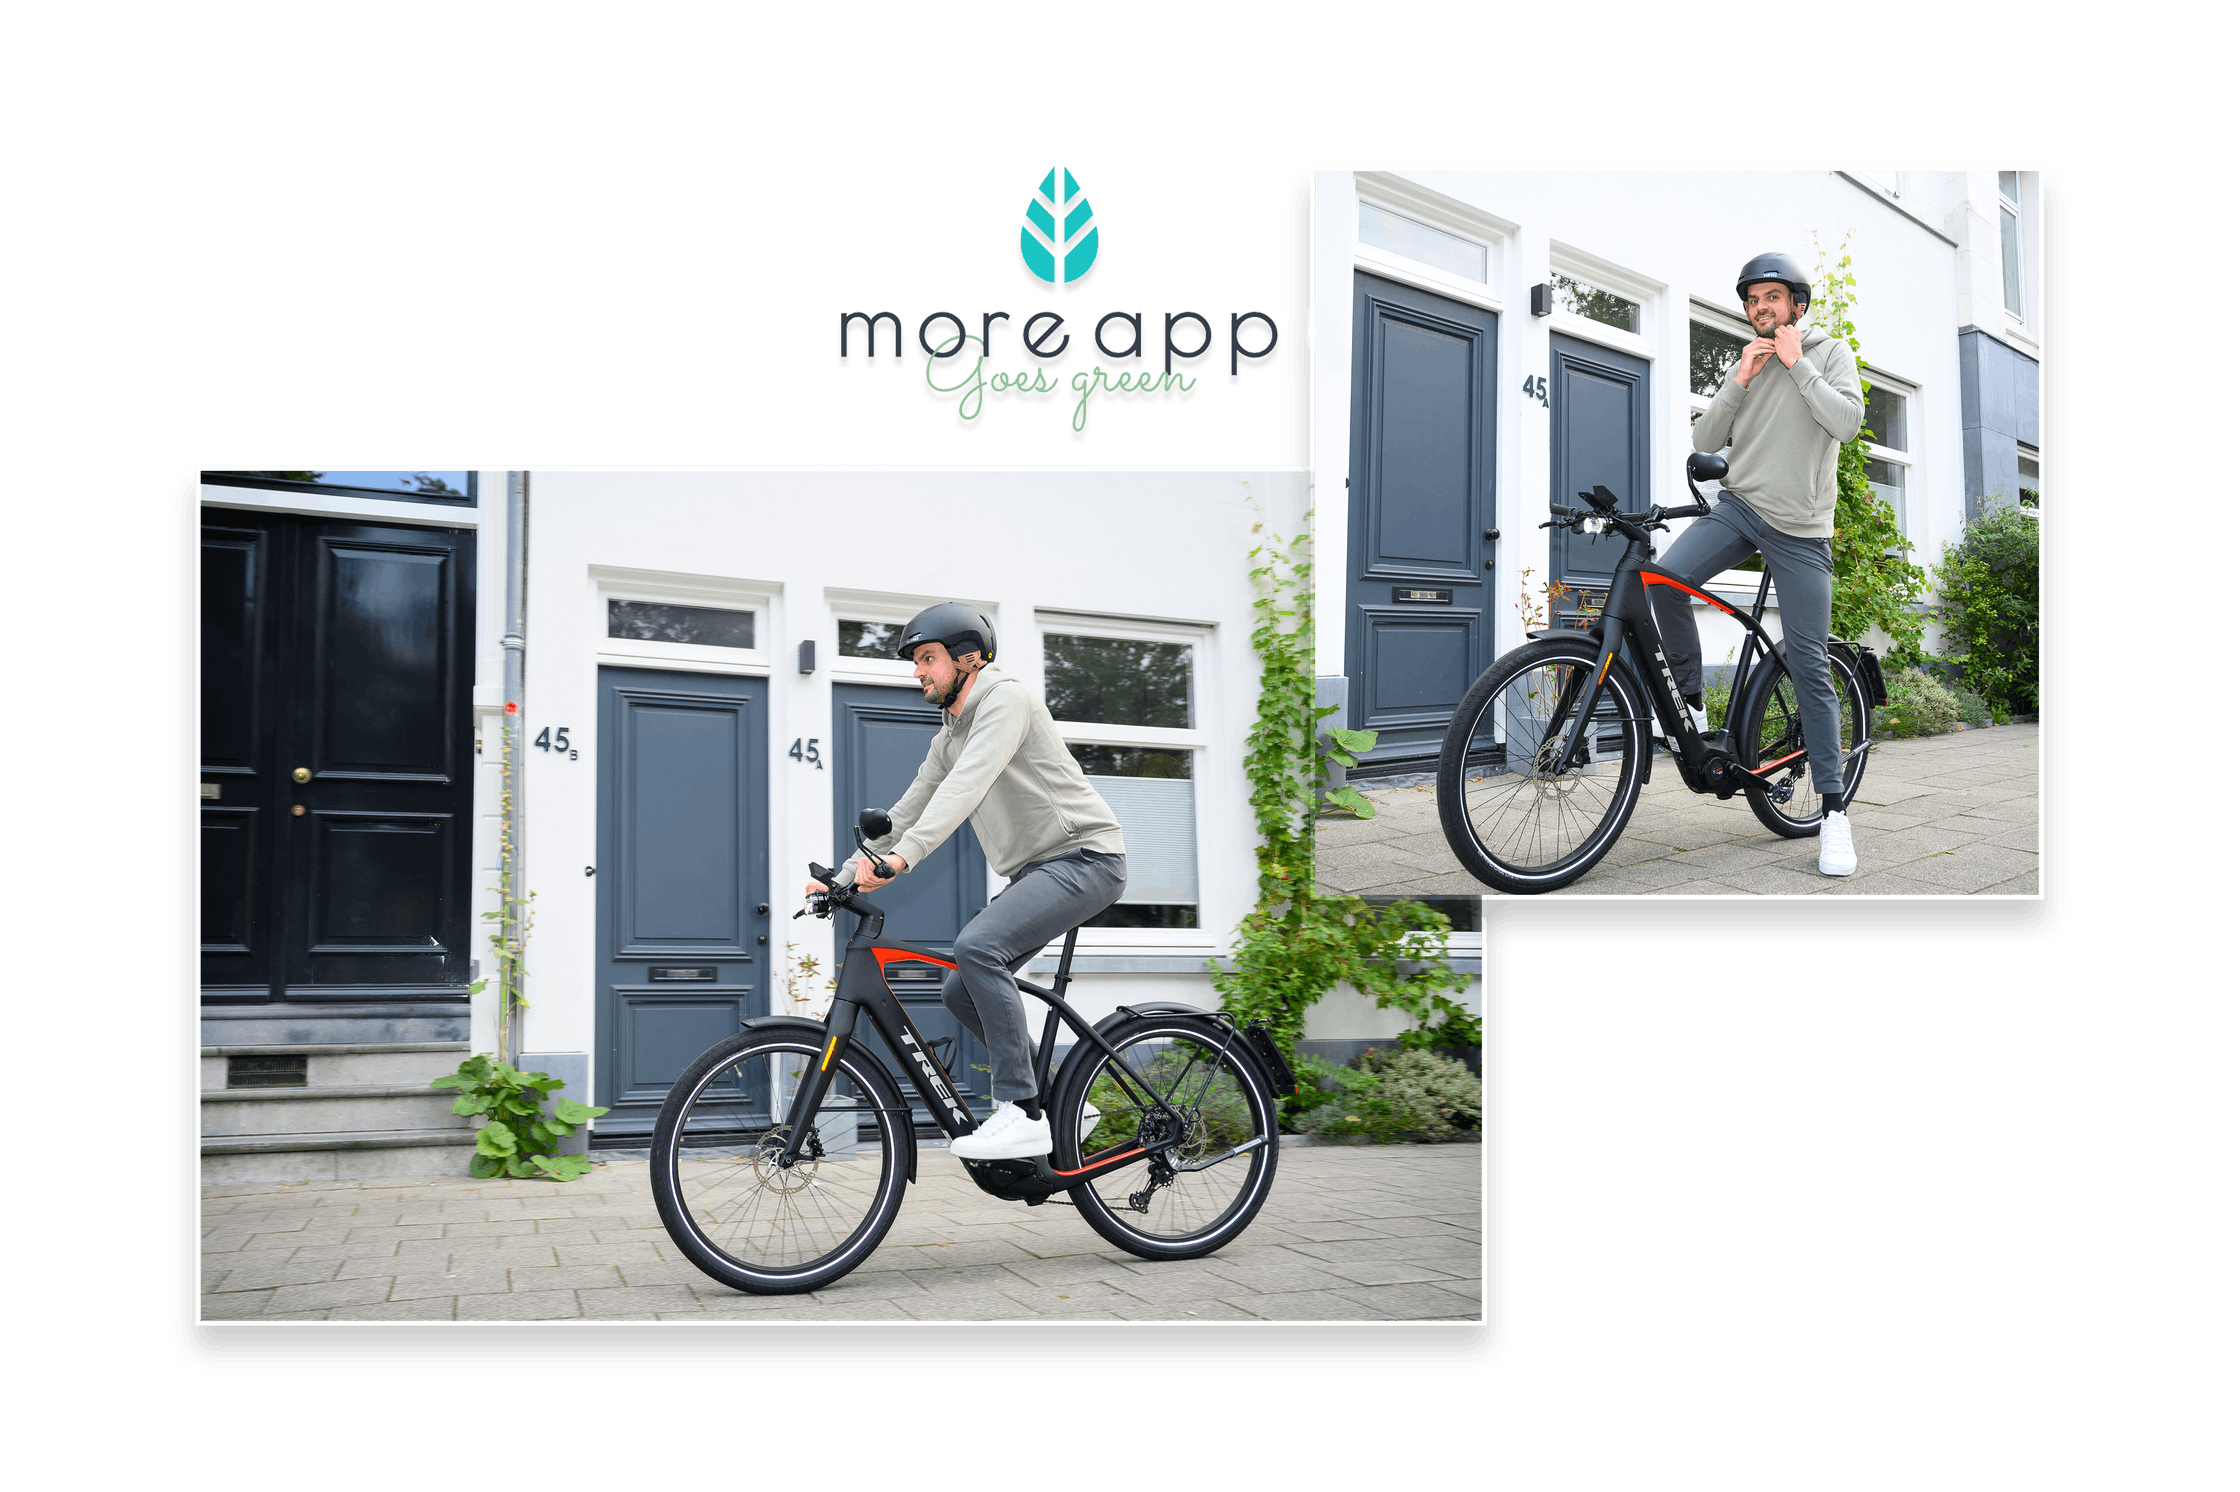 Thom CEO MoreApp Bike Reduzierung ökologischen Fußabdrucks